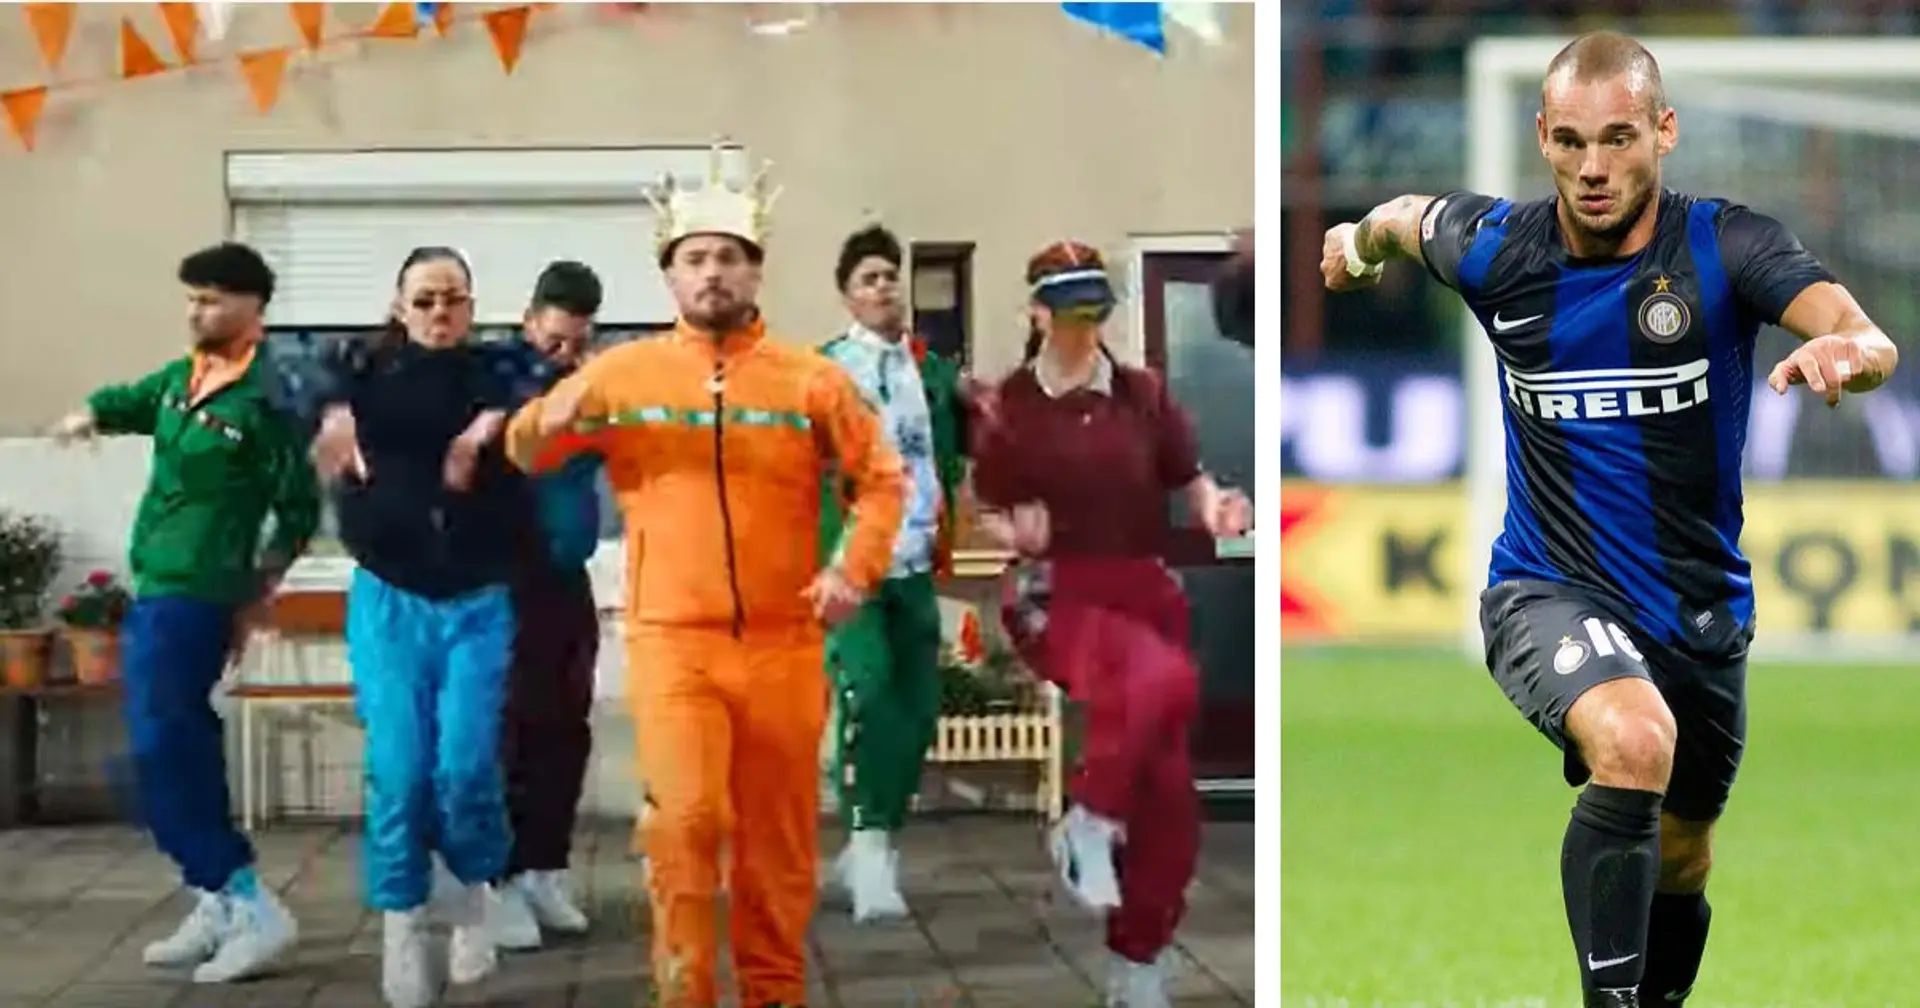 Dal calcio alla musica, Wesley Sneijder si dà al rap: protagonista di uno spot pubblicitario esilarante